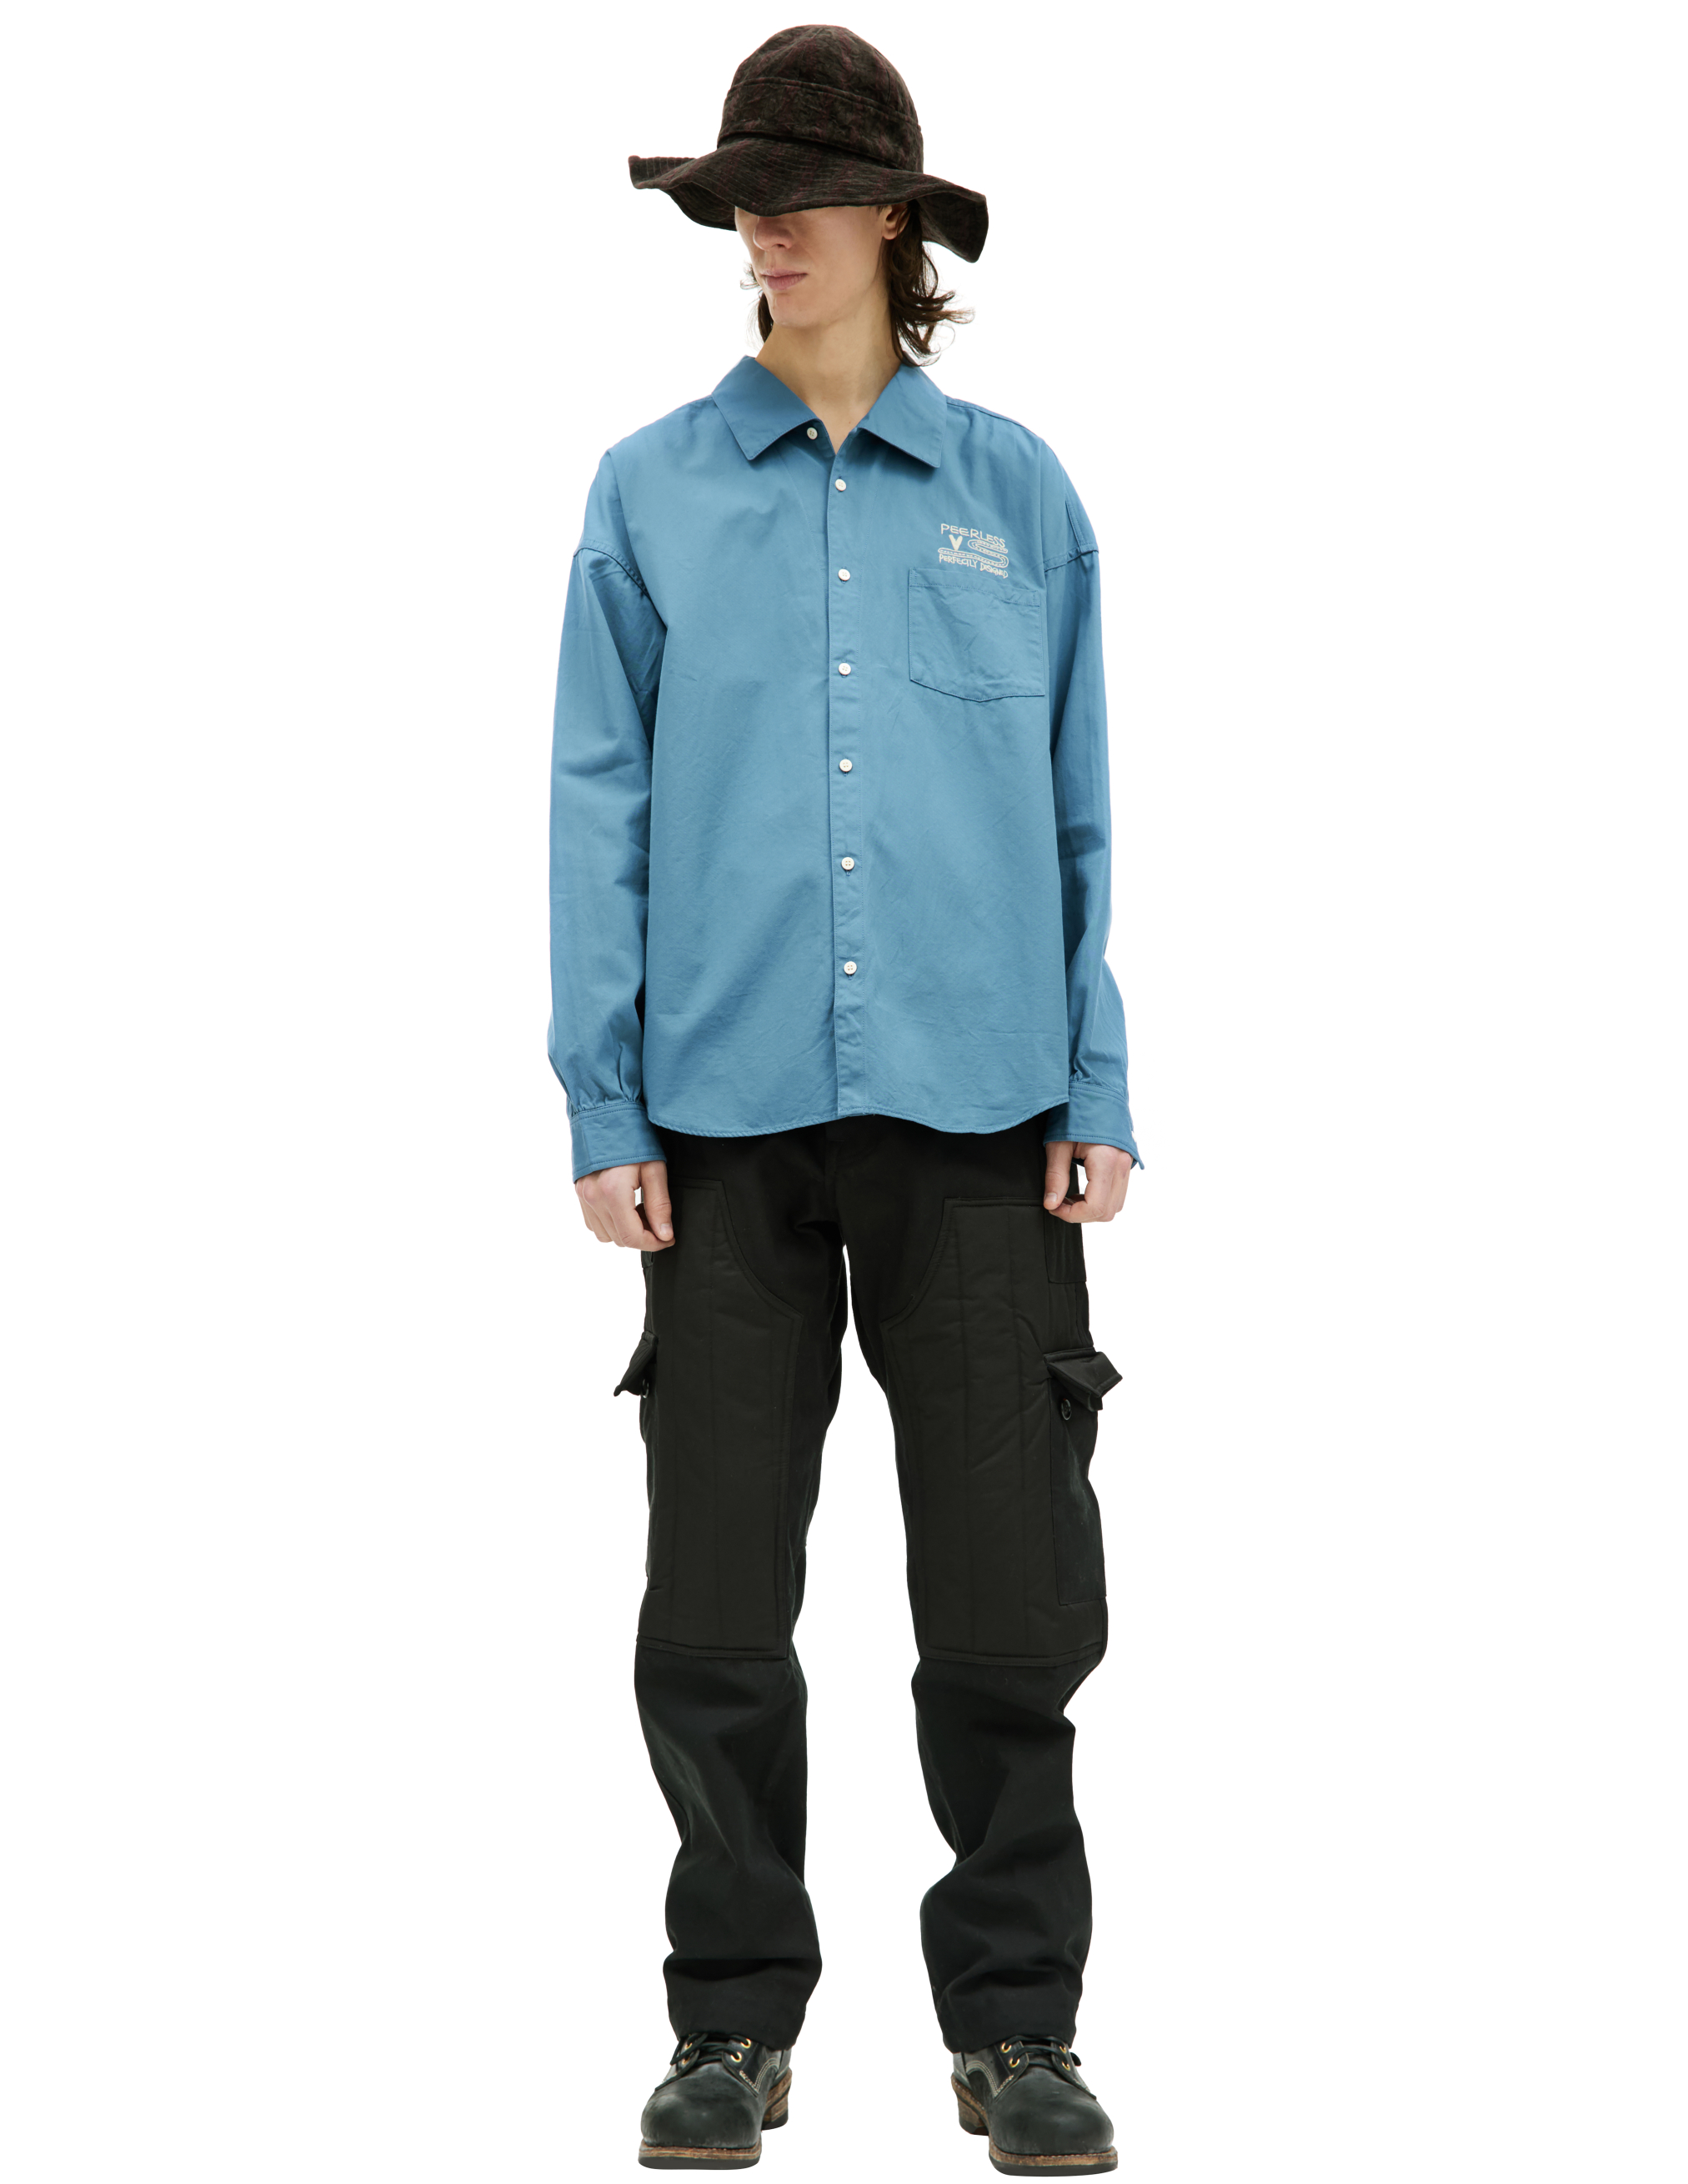 Хлопковая рубашка Palmer с вышивкой visvim 0123205011015, размер 4;5 - фото 1